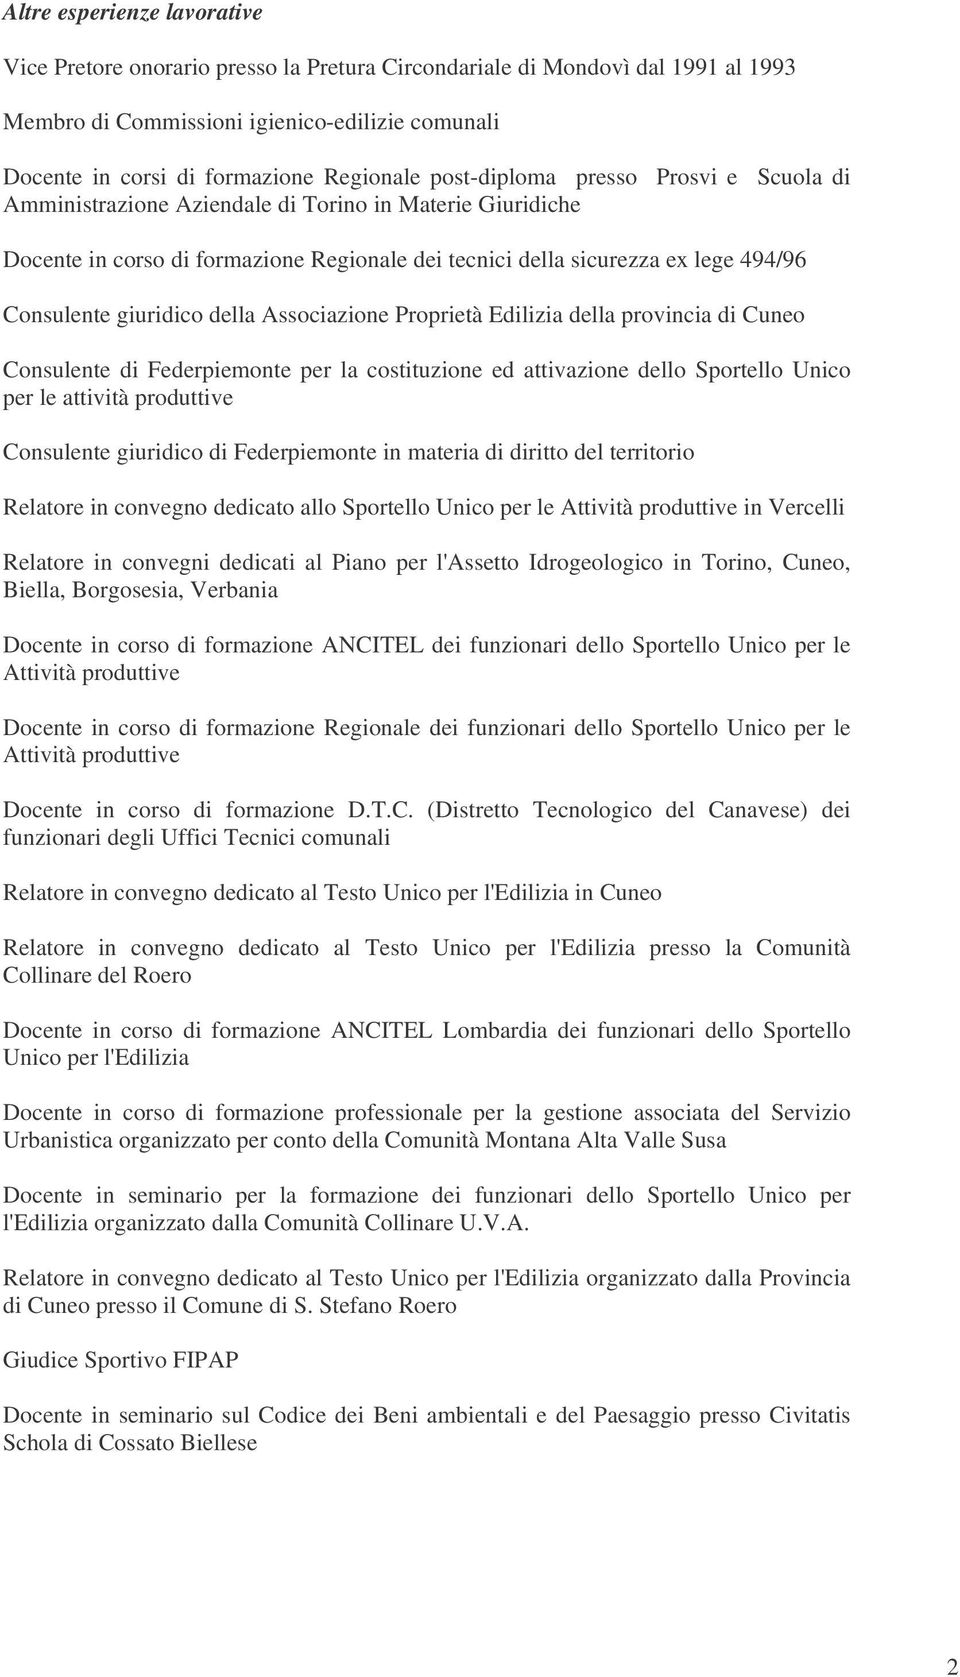 giuridico della Associazione Proprietà Edilizia della provincia di Cuneo Consulente di Federpiemonte per la costituzione ed attivazione dello Sportello Unico per le attività produttive Consulente